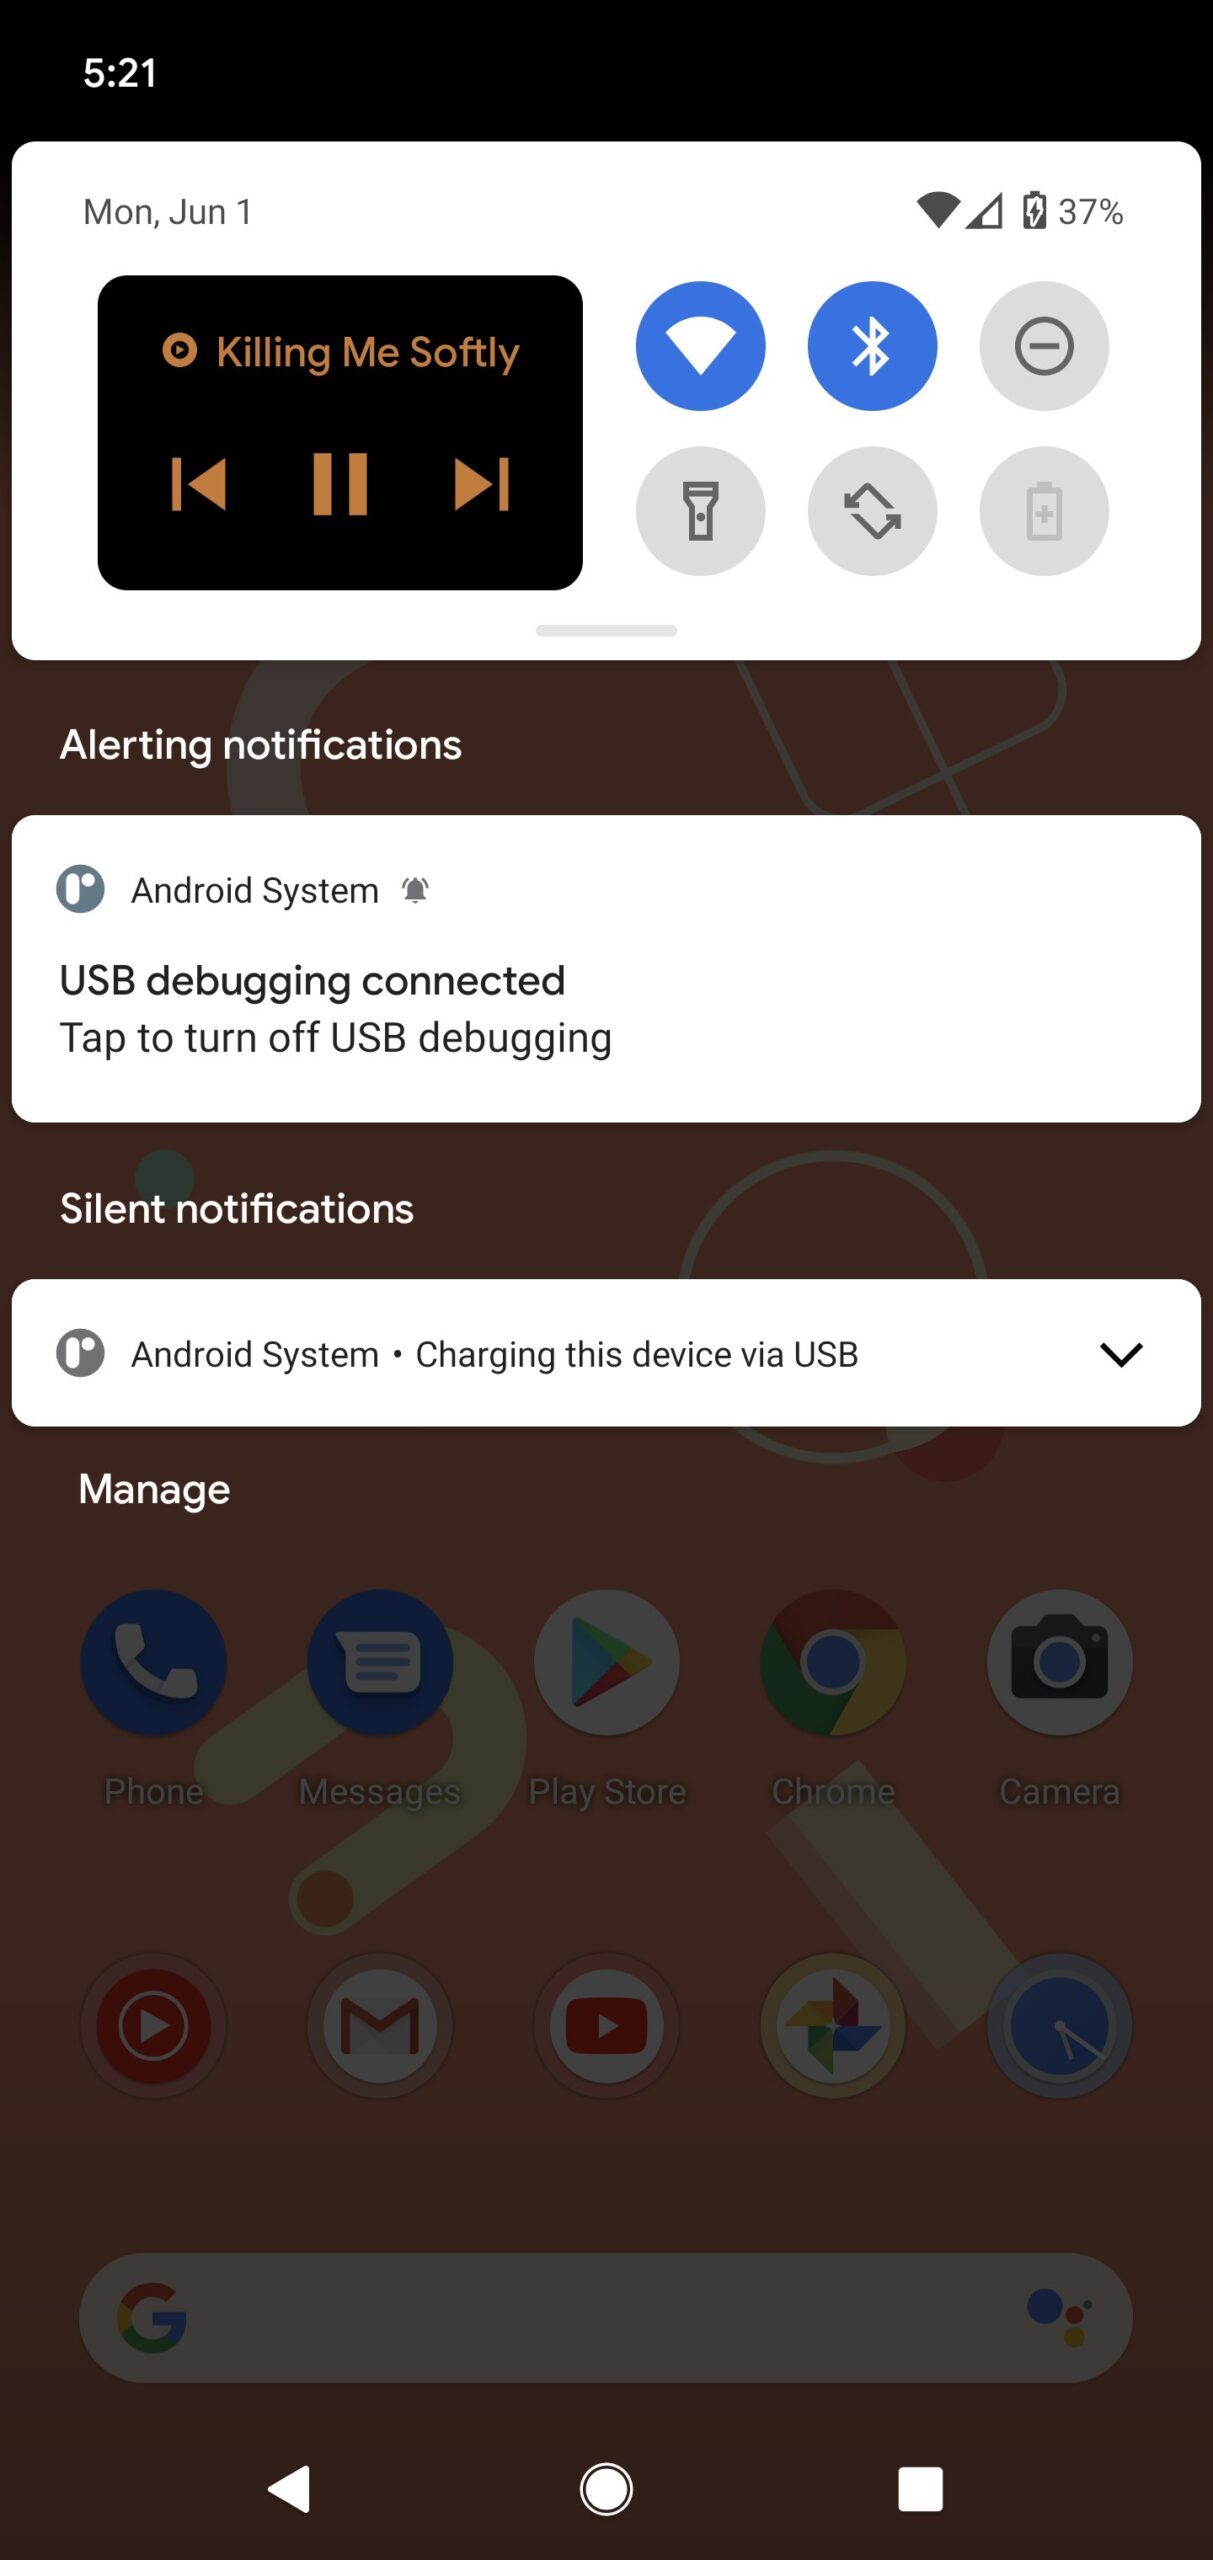 Android 11 Beta 1 aparece em alguns dispositivos